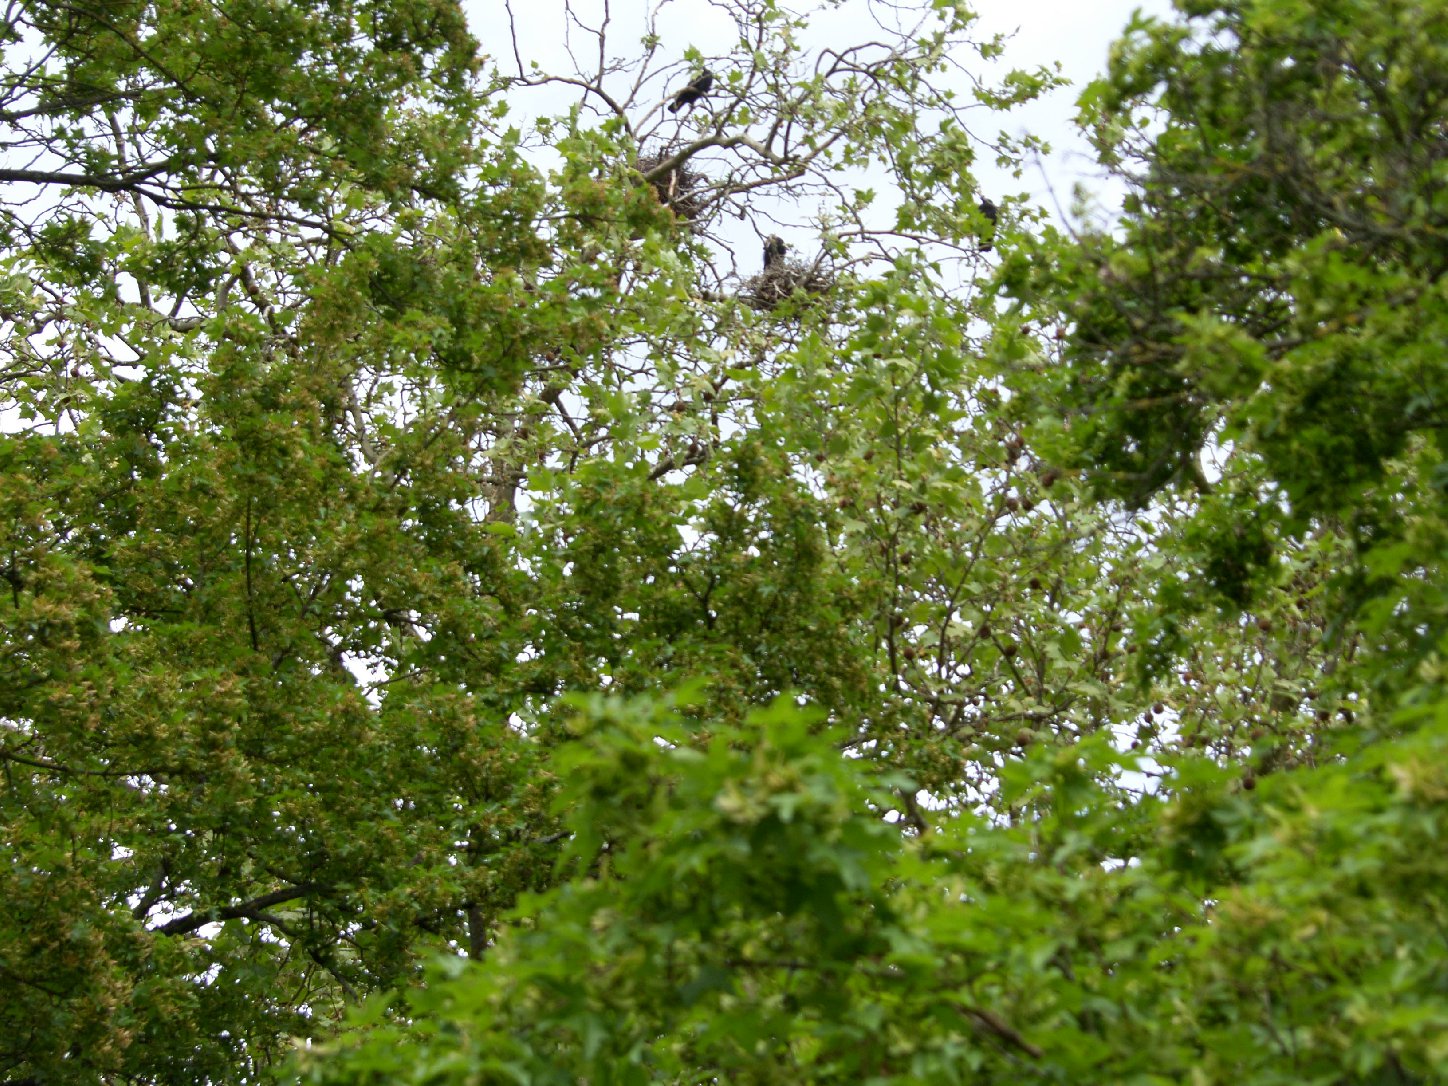 Hoch oben in den Bäumen bauen die Saatkrähen ihre Nester (hier am OHG). Foto: Pfalz-Express/Ahme